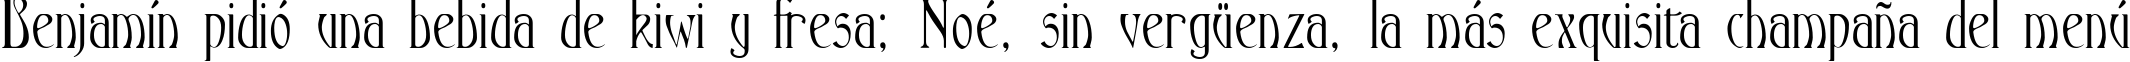 Пример написания шрифтом Ambrosia текста на испанском